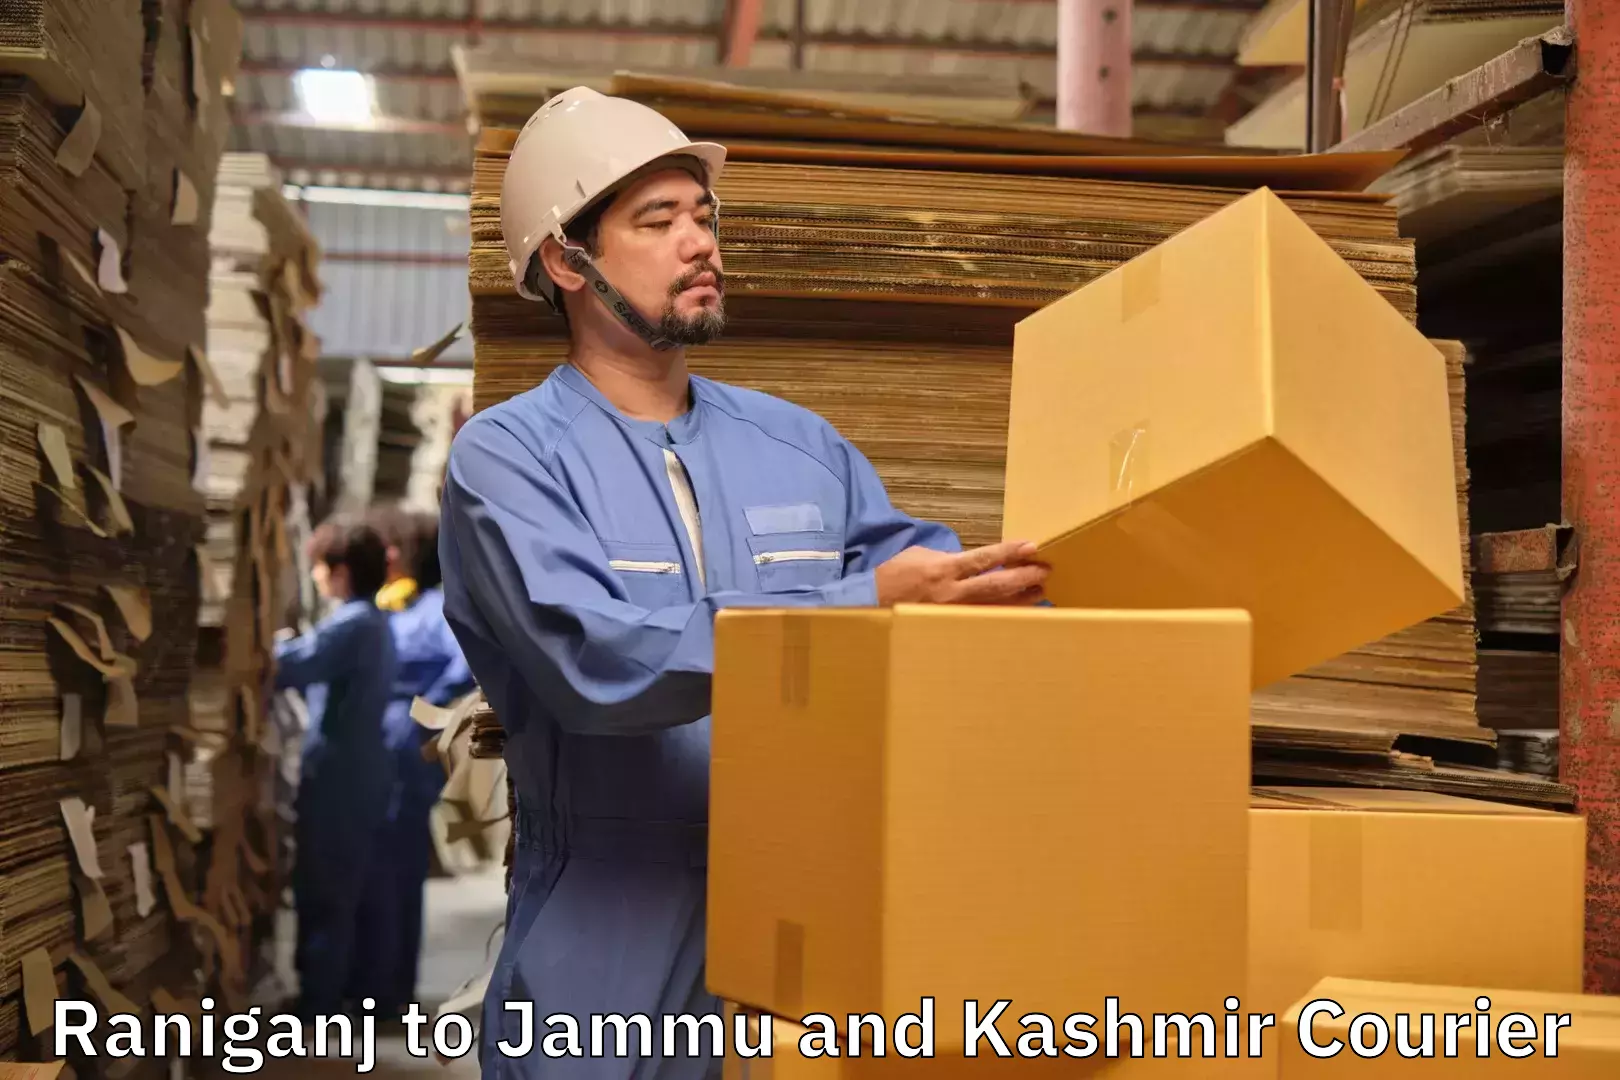 Luggage delivery network Raniganj to IIT Jammu